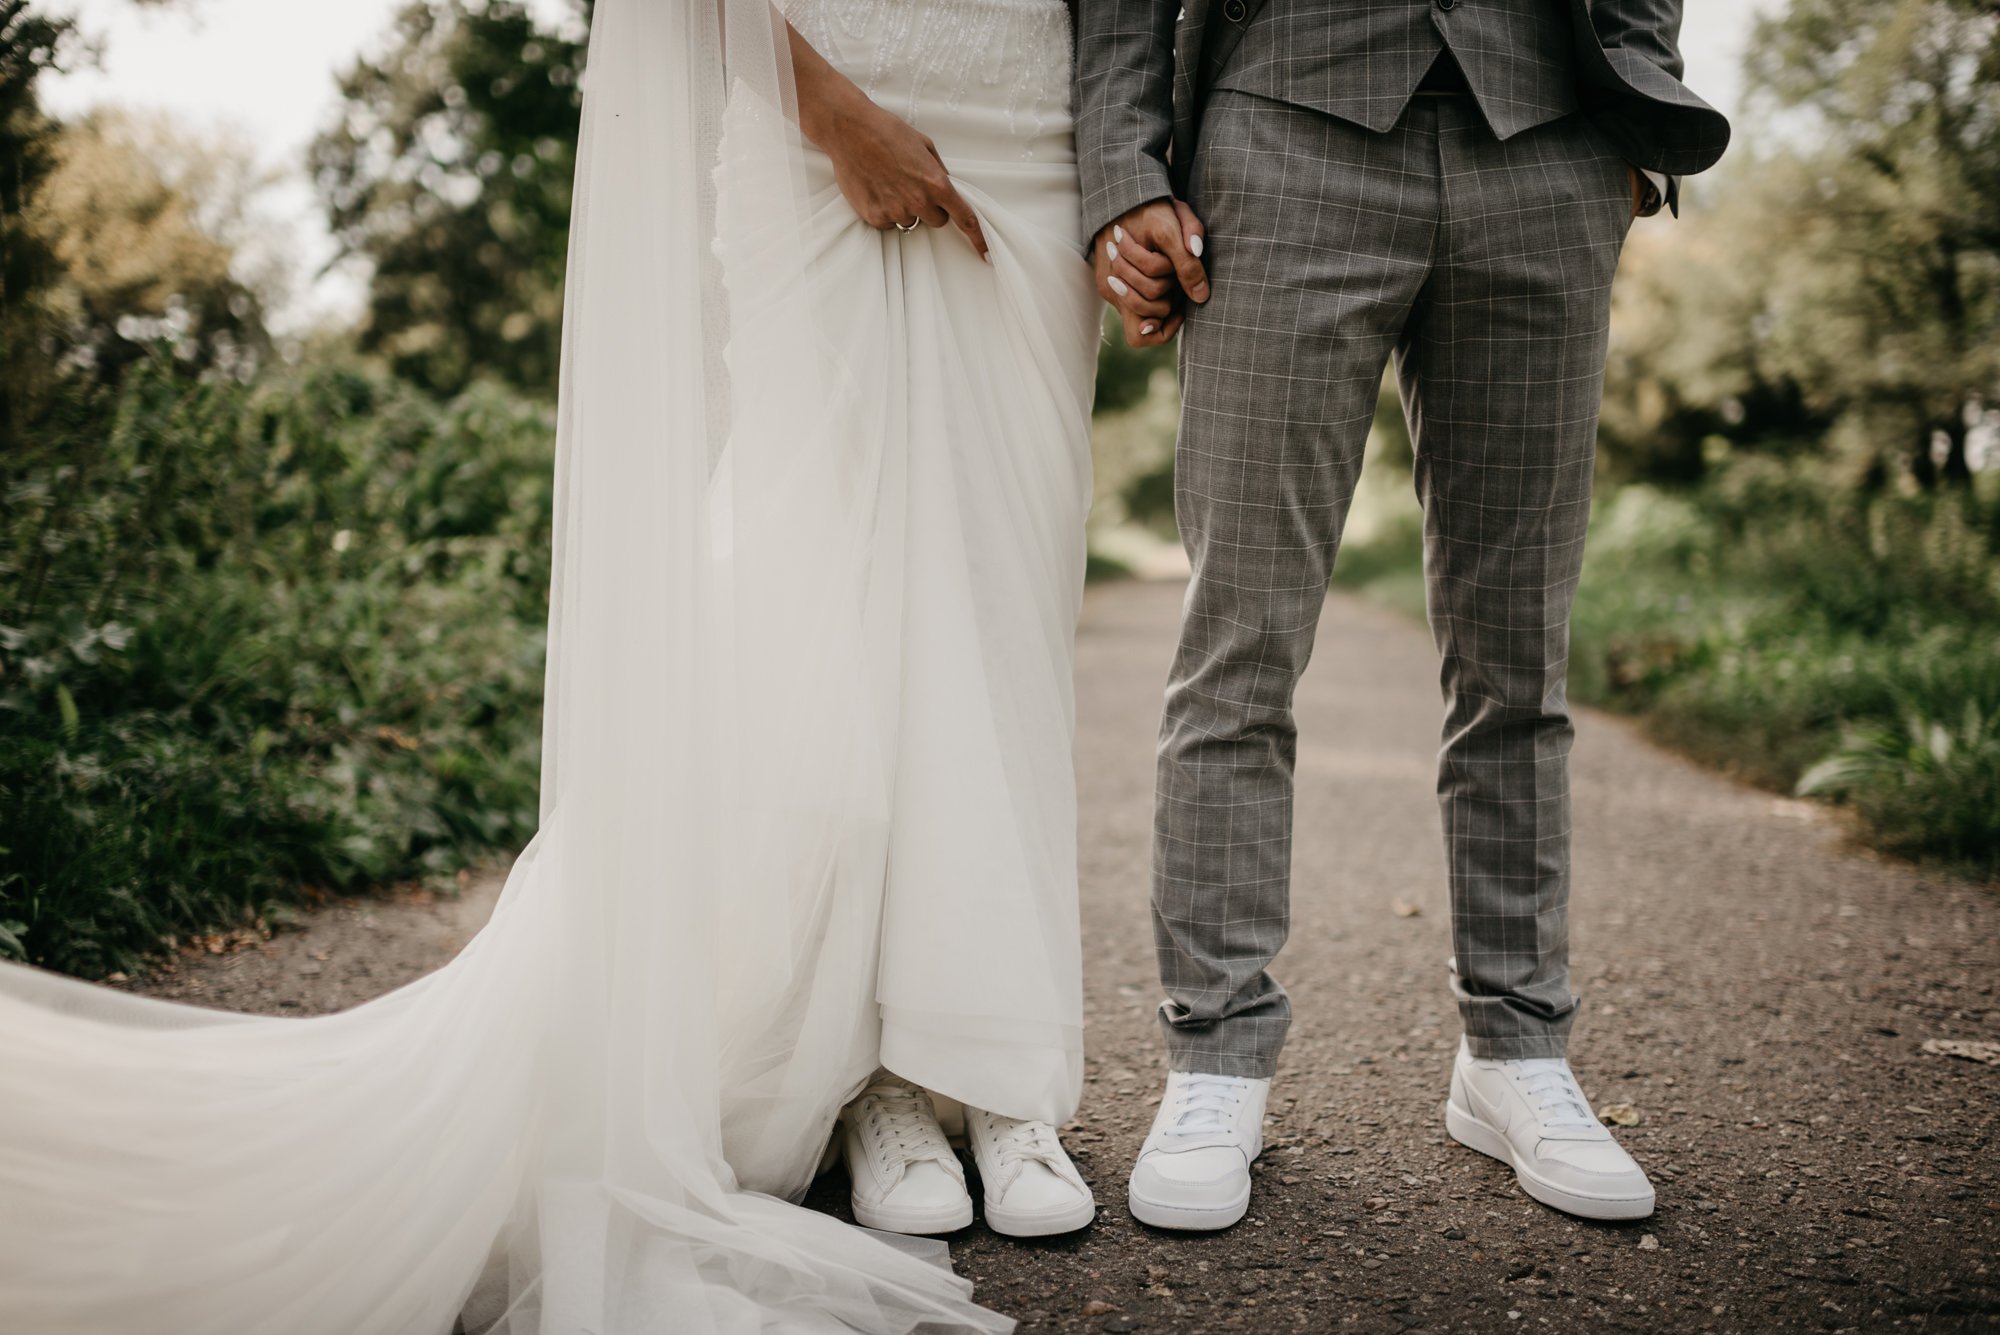 Что значит жених. Кеды на свадьбу невесте и жениху. Свадебное платье с кедами. Свадебное платье с кроссовками. Свалелеое платье с кроссовками.